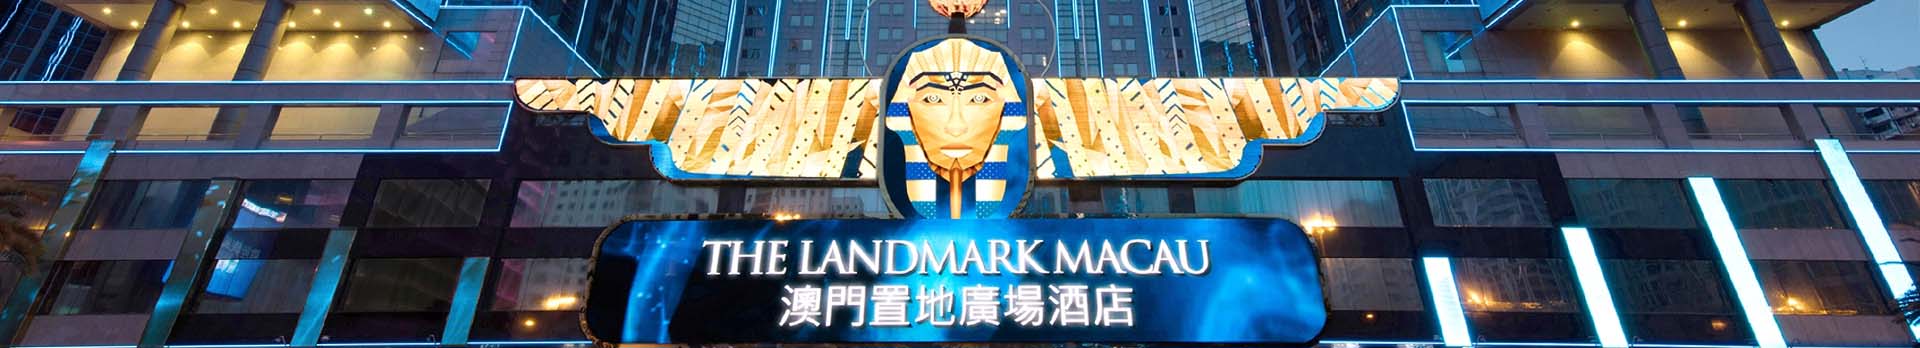 Pharaoh’s Palace Casino Macau